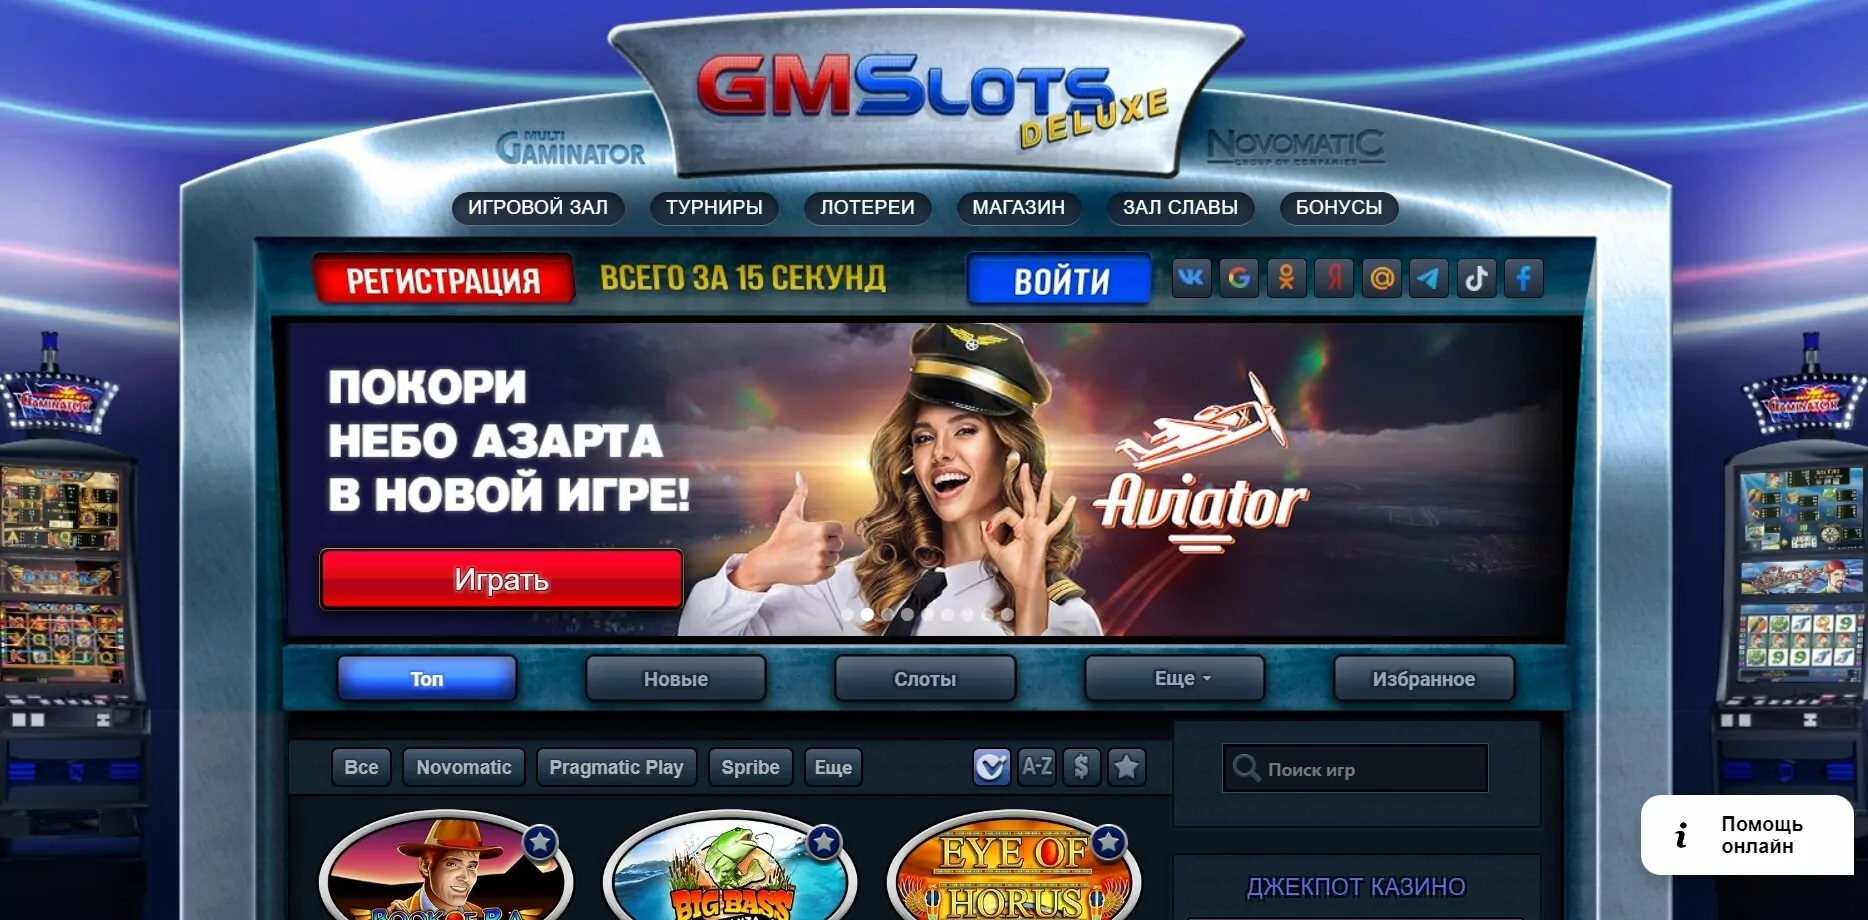 gmslots deluxe casino